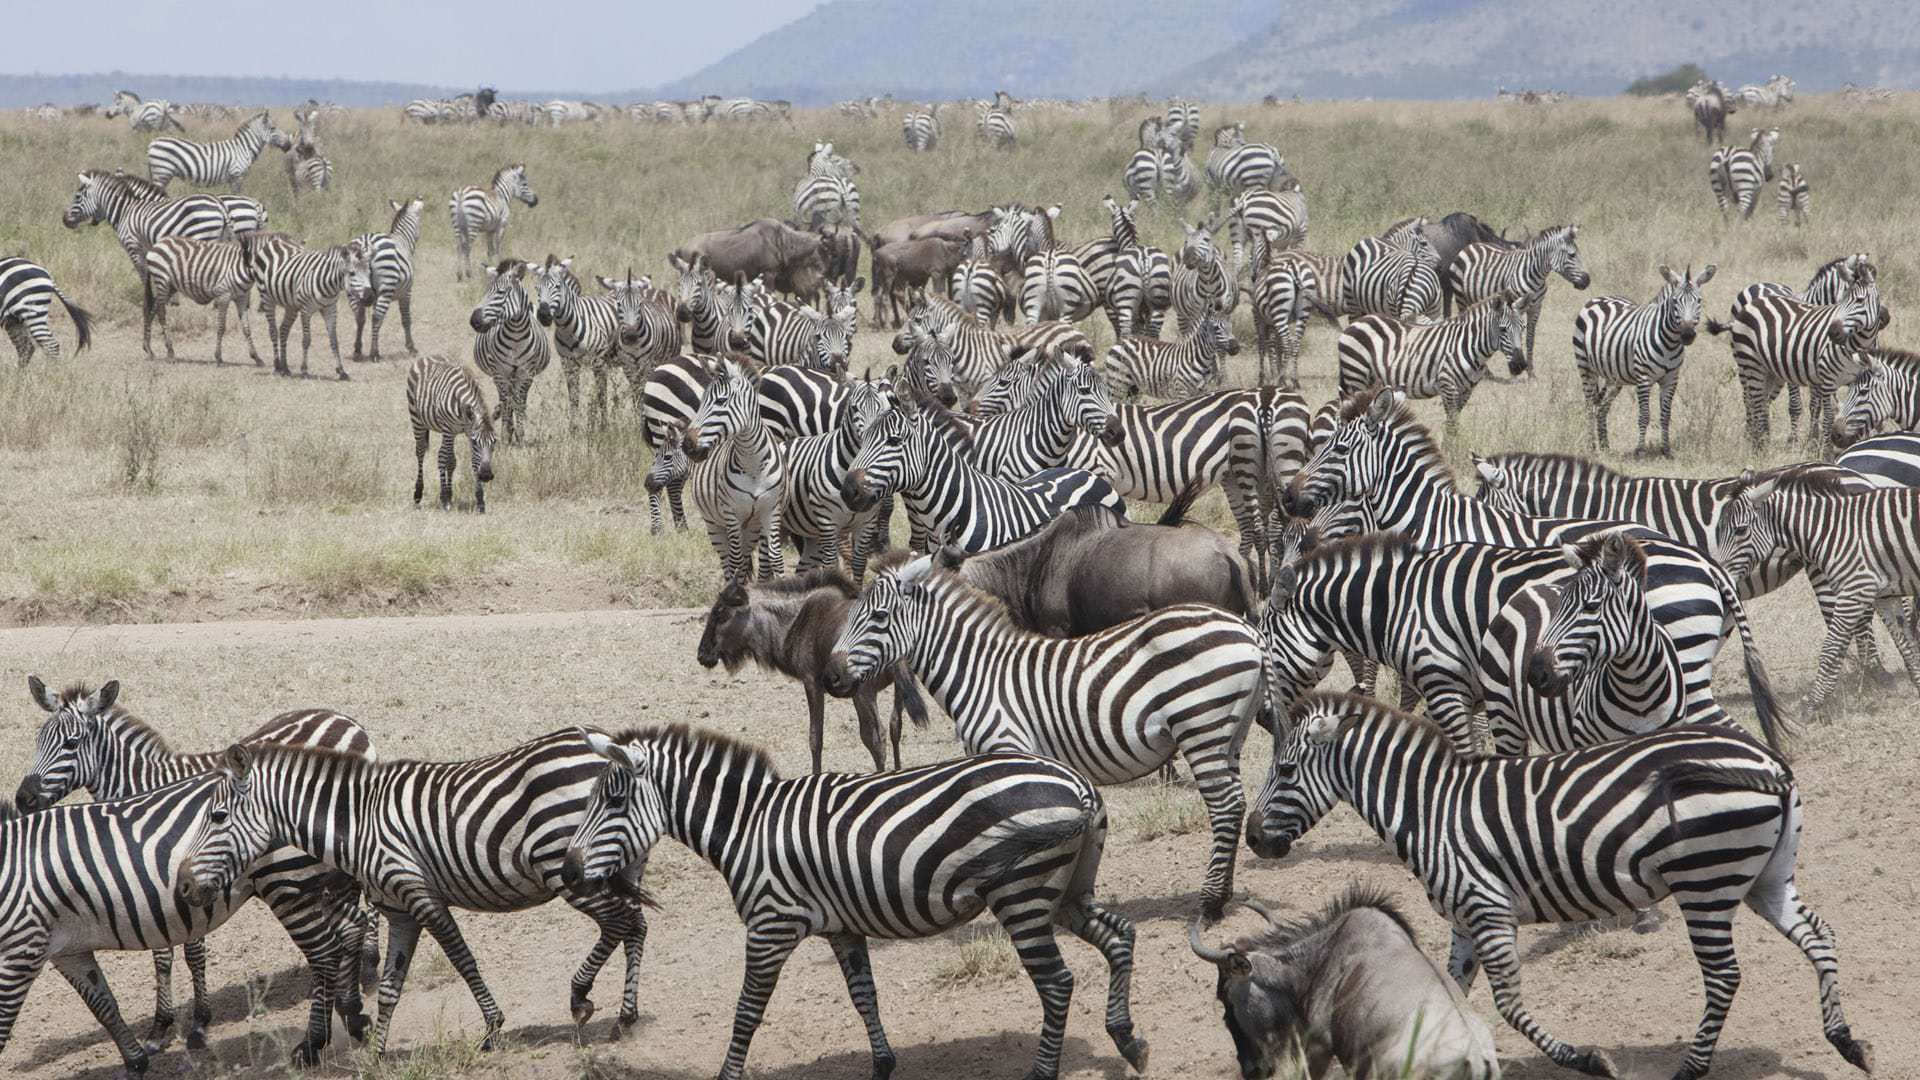 Zebra and wildebeest